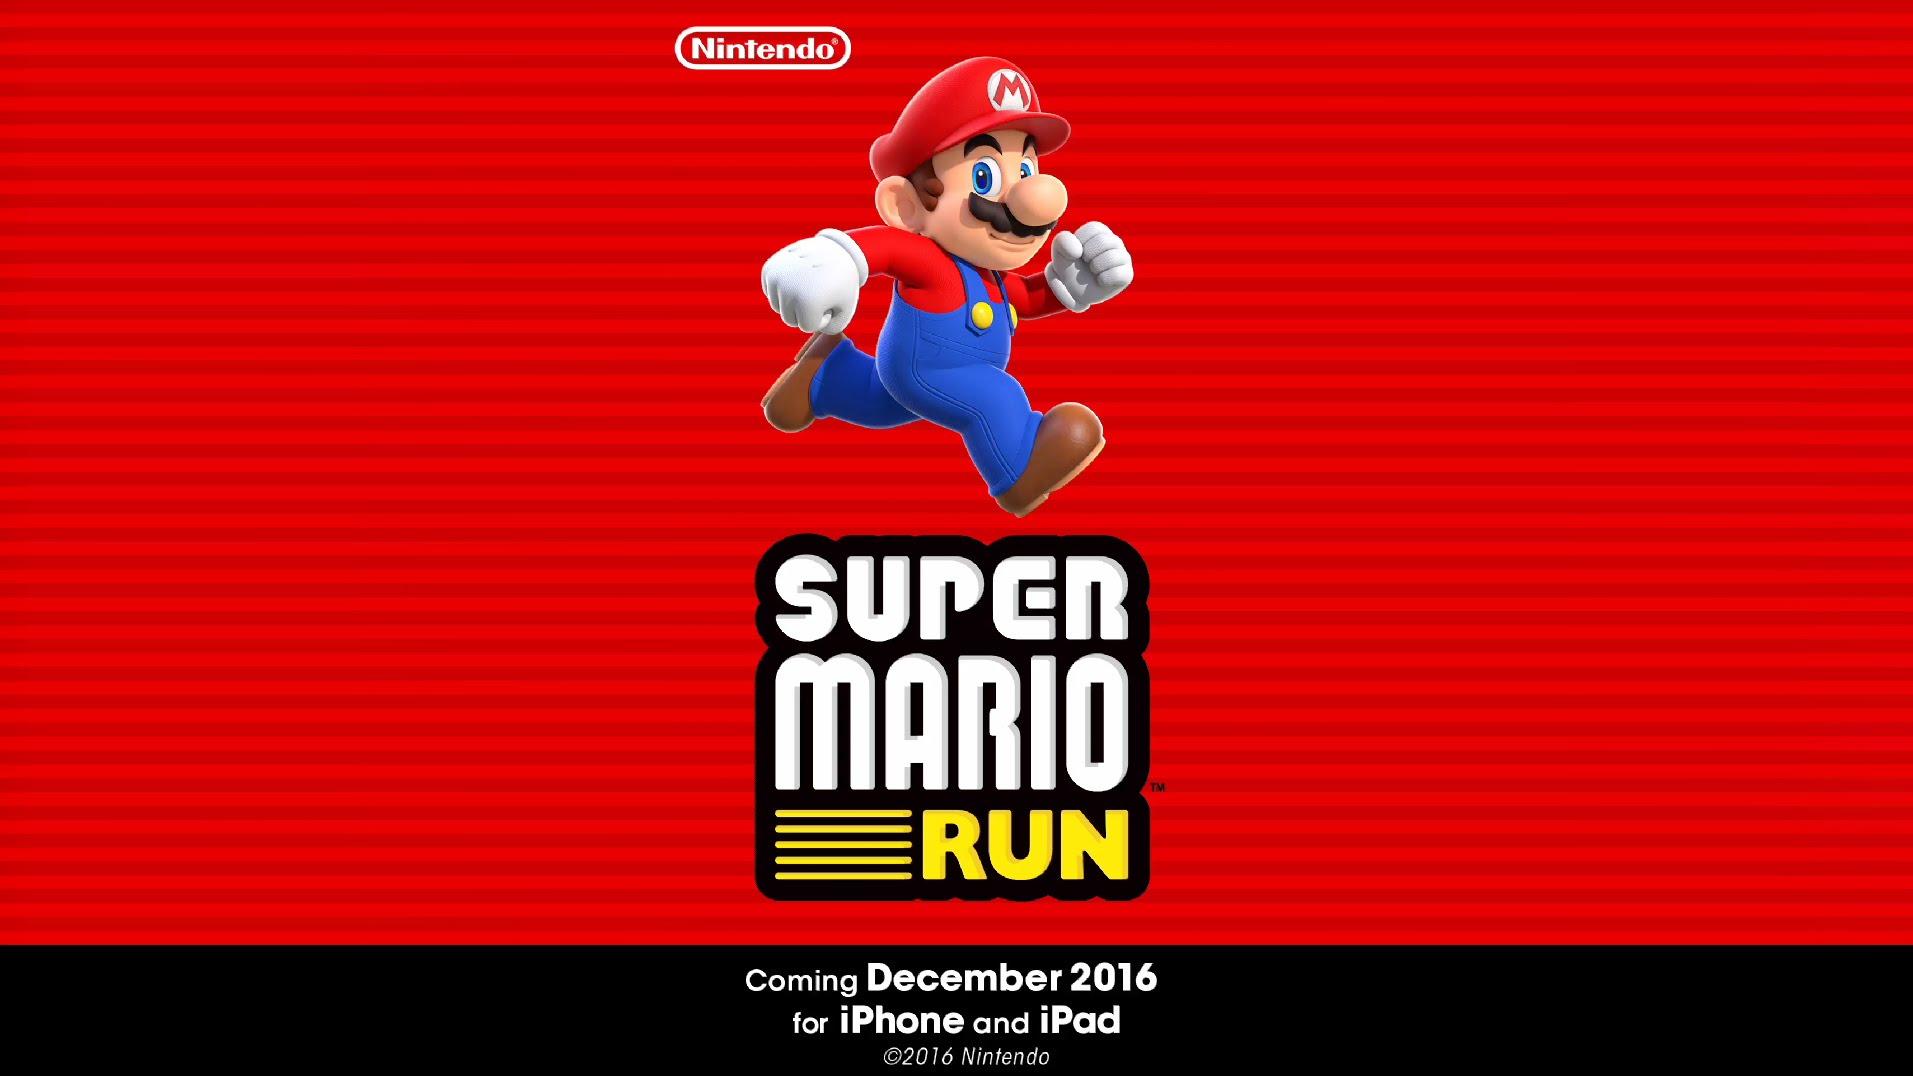 Solo 3 millones de las 90 millones de descargas de Super Mario Run fueron pagas